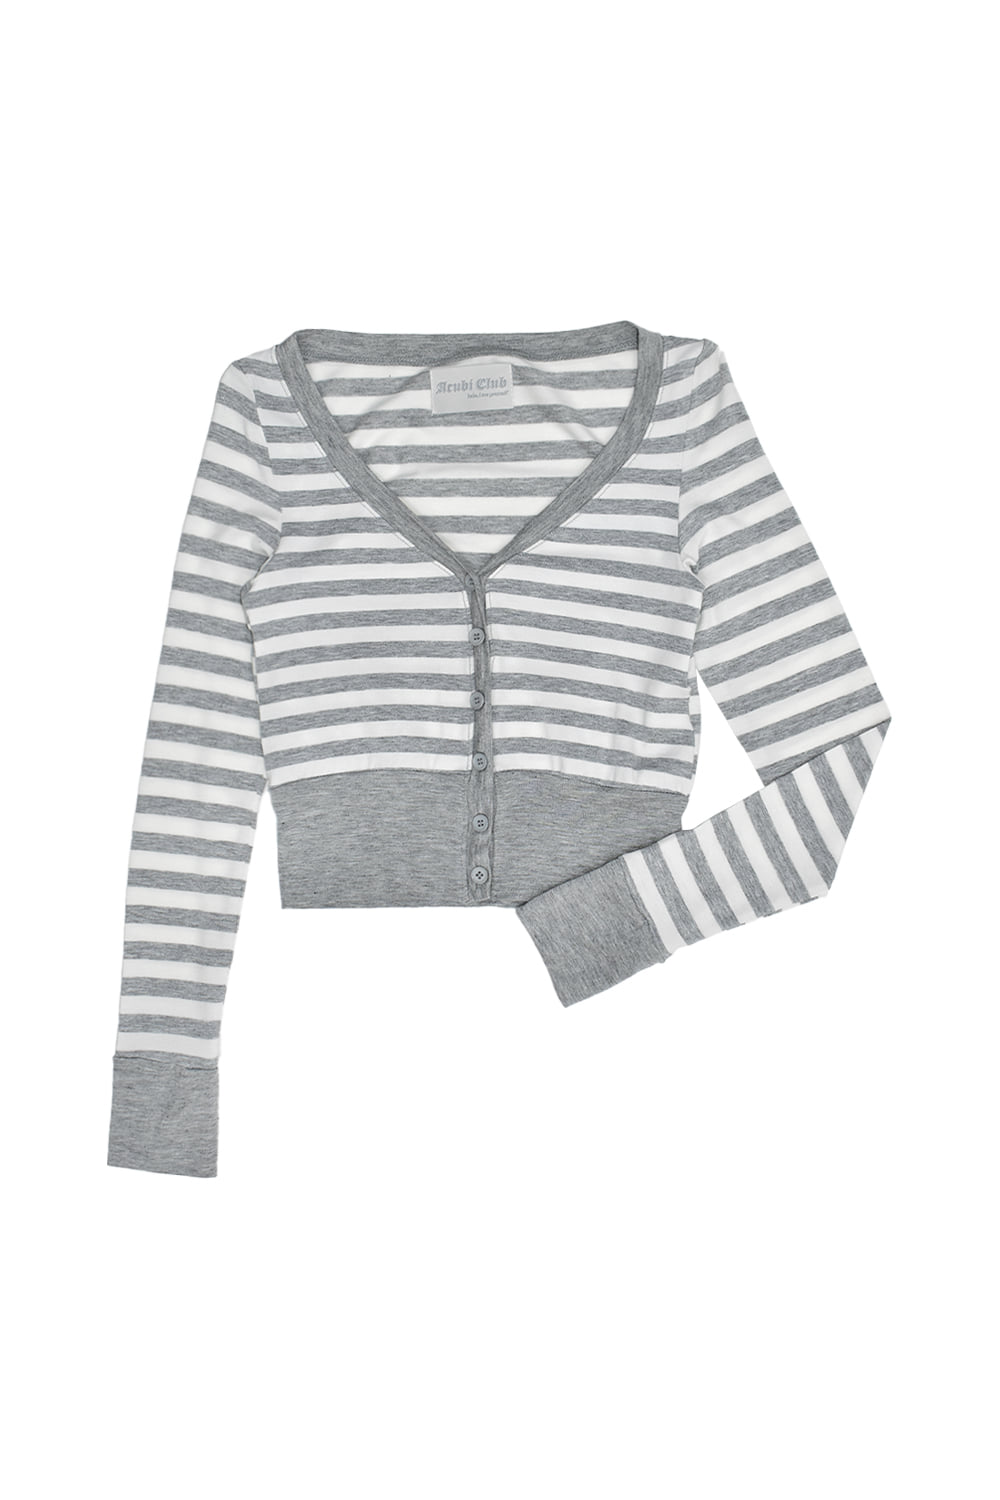 [ACUBI CLUB] stripe crop cardigan (gray)